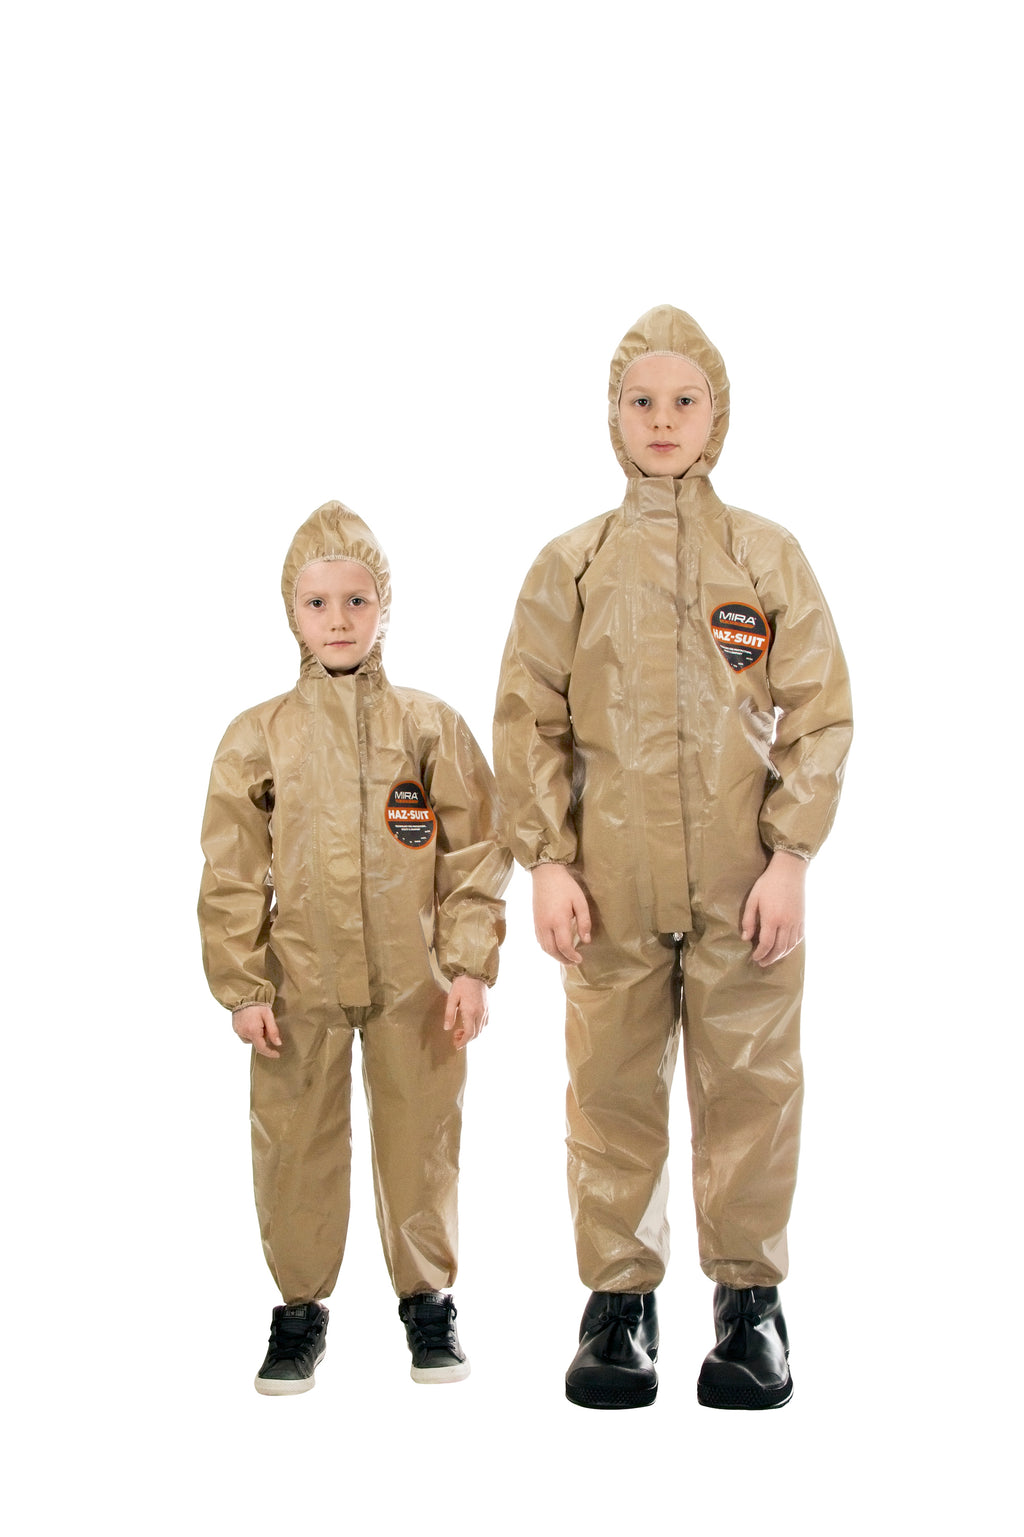 2022 Hazmat Suit for Kids Guide